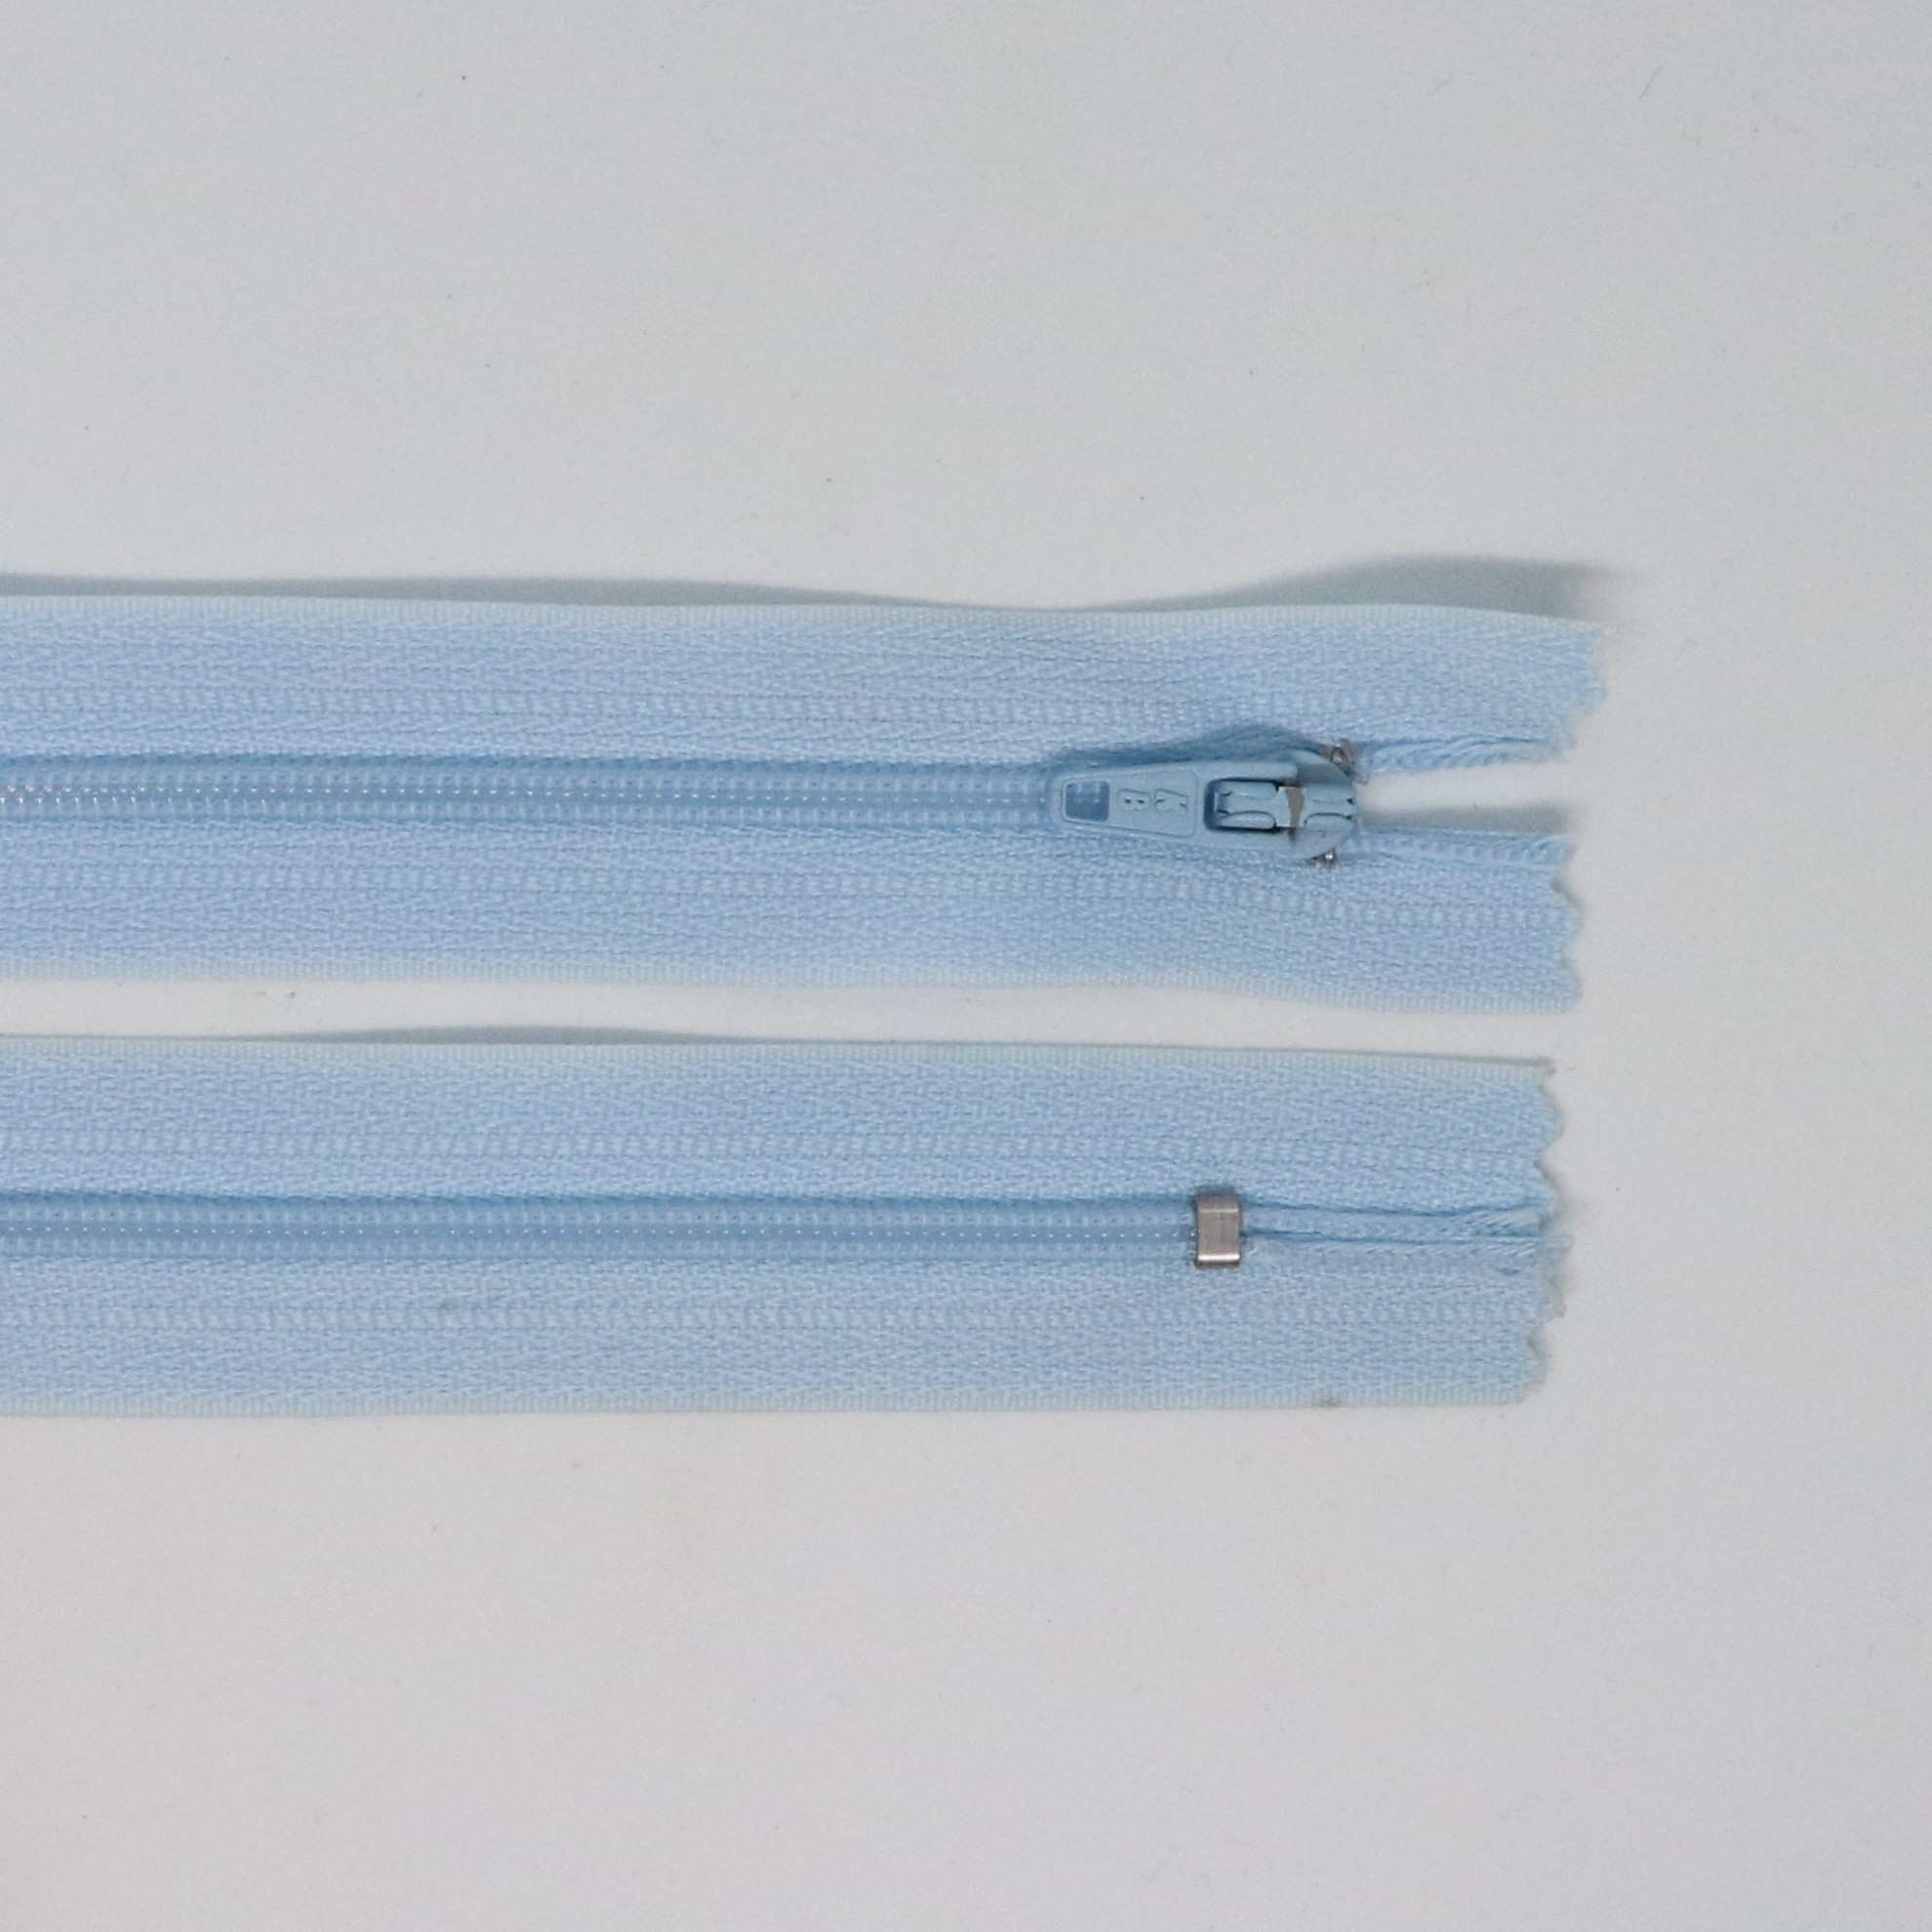 Spirálový zip, šíøe 3 mm, délka 60 cm, svìtle modrá - zvìtšit obrázek